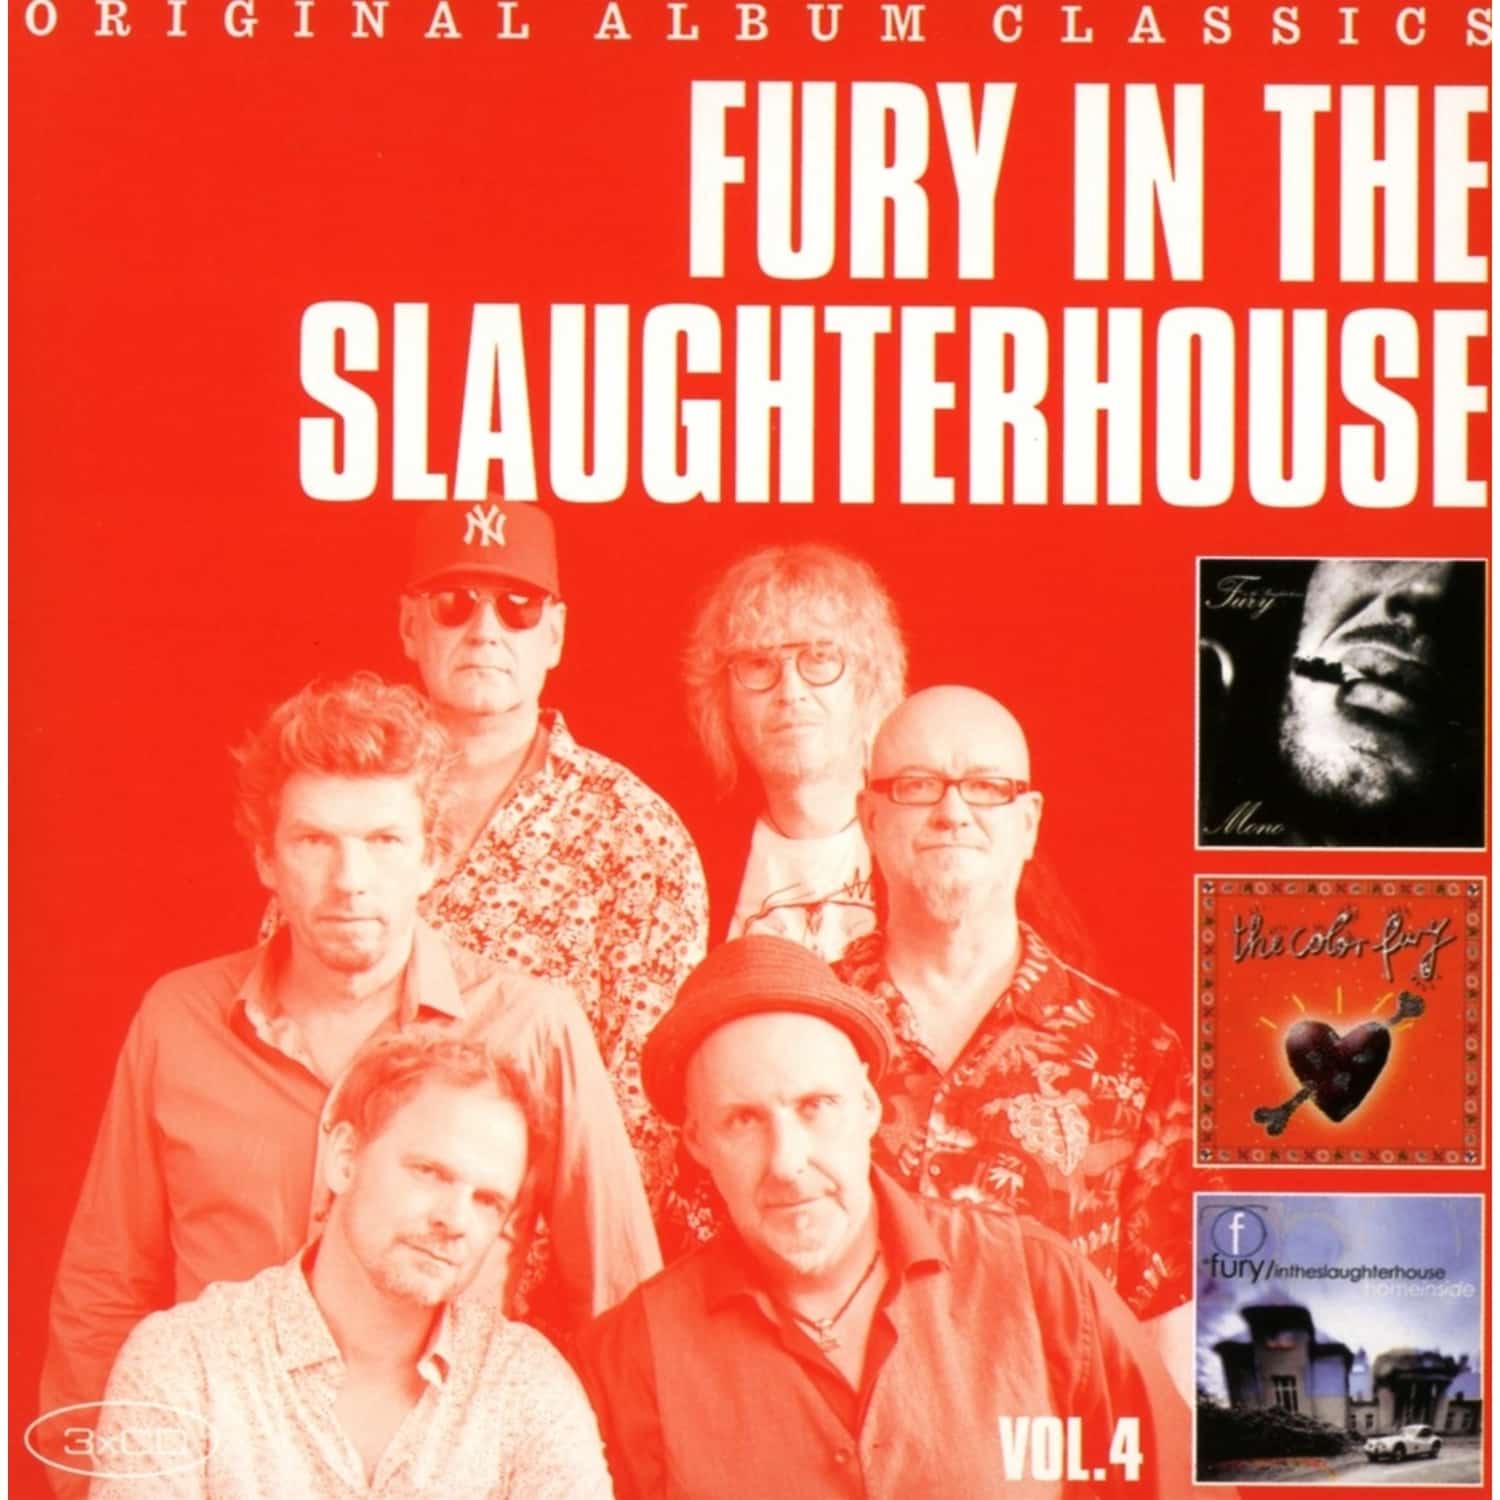 Fury In The Slaughterhouse - ORIGINAL ALBUM CLASSICS VOL.4 